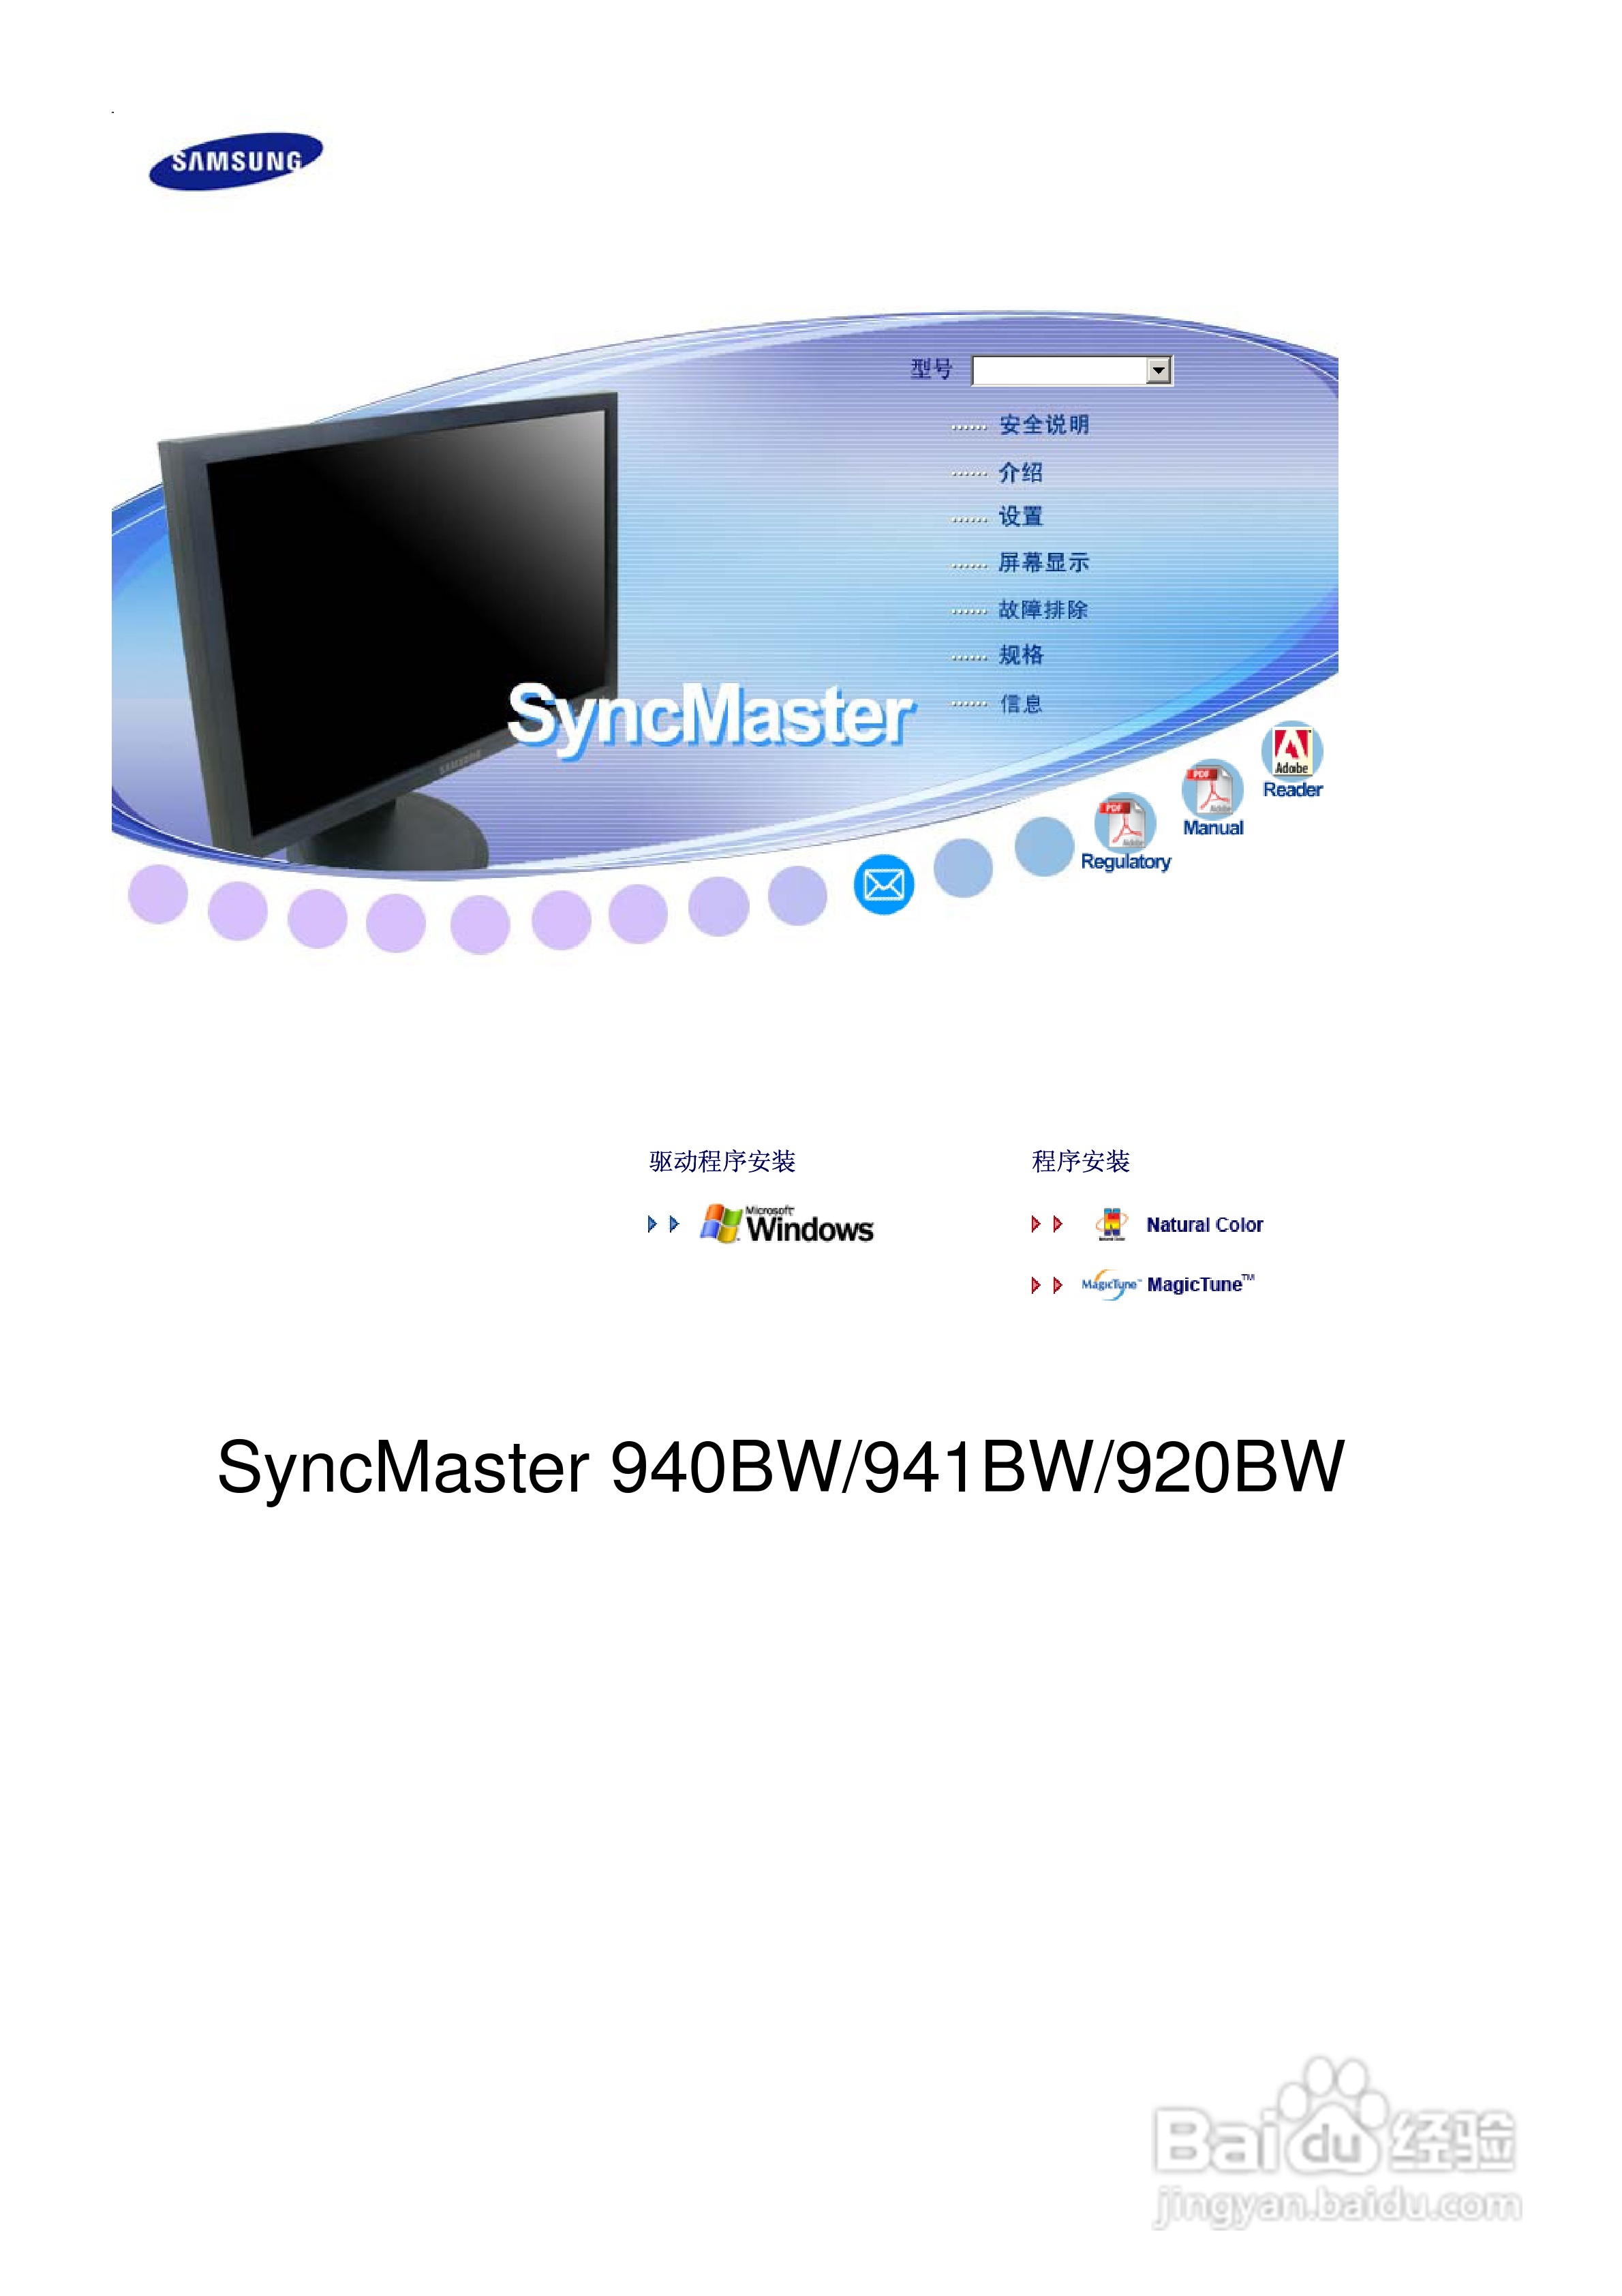 Monitor 19" Samsung SyncMaster 940BW | Grudziądz | Ogłoszenie na ...